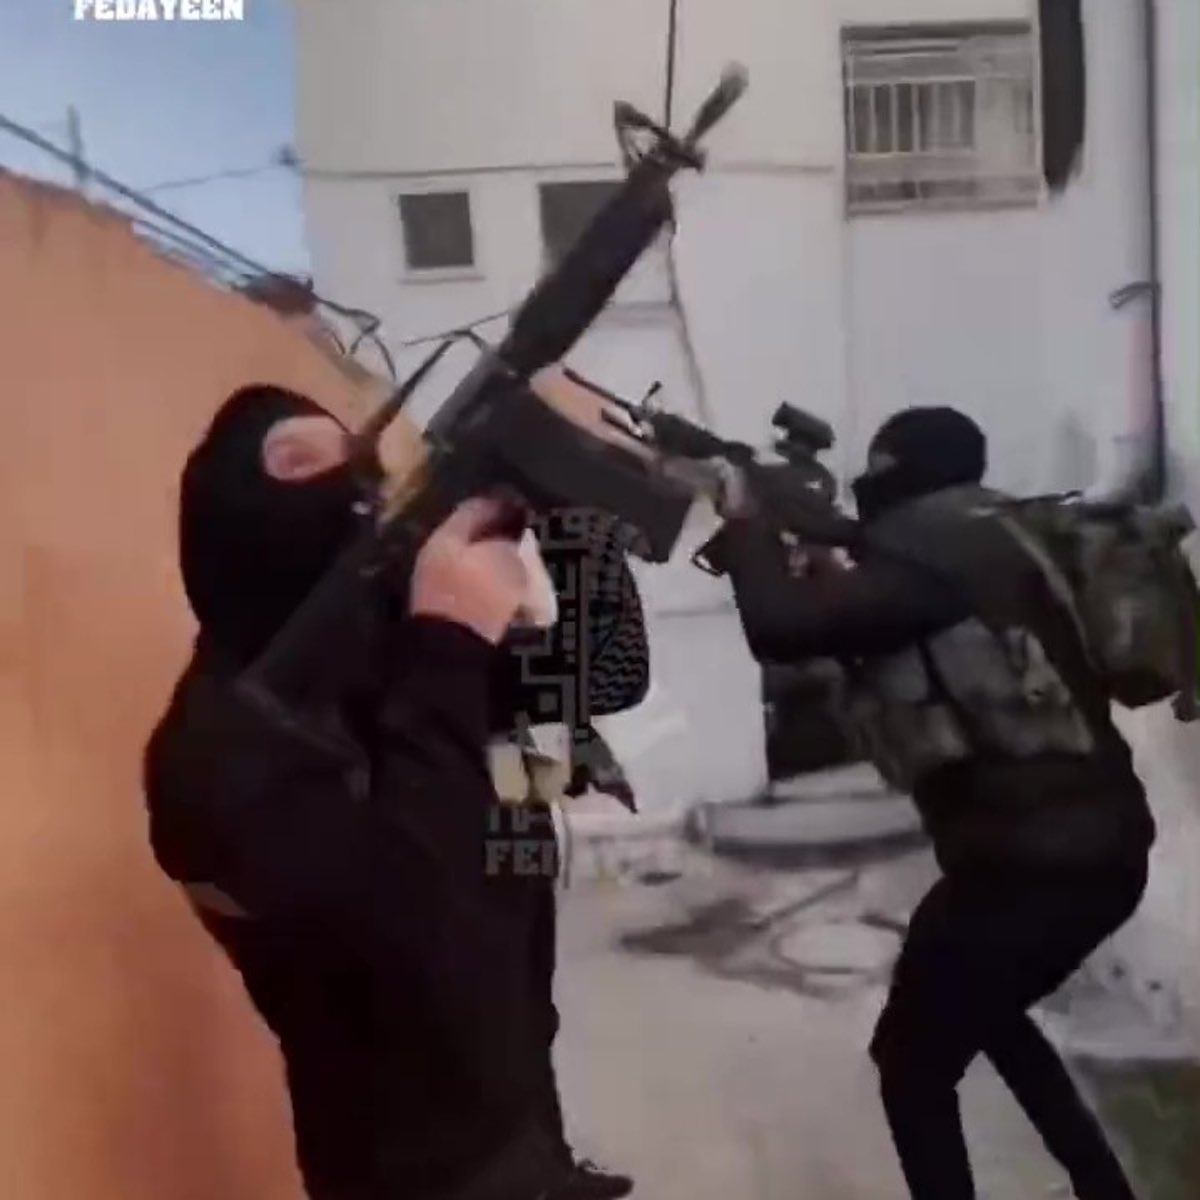 Fatah gunmen train in Jenin, December 2022. Source: The Fedayeen Twitter account via MEMRI.